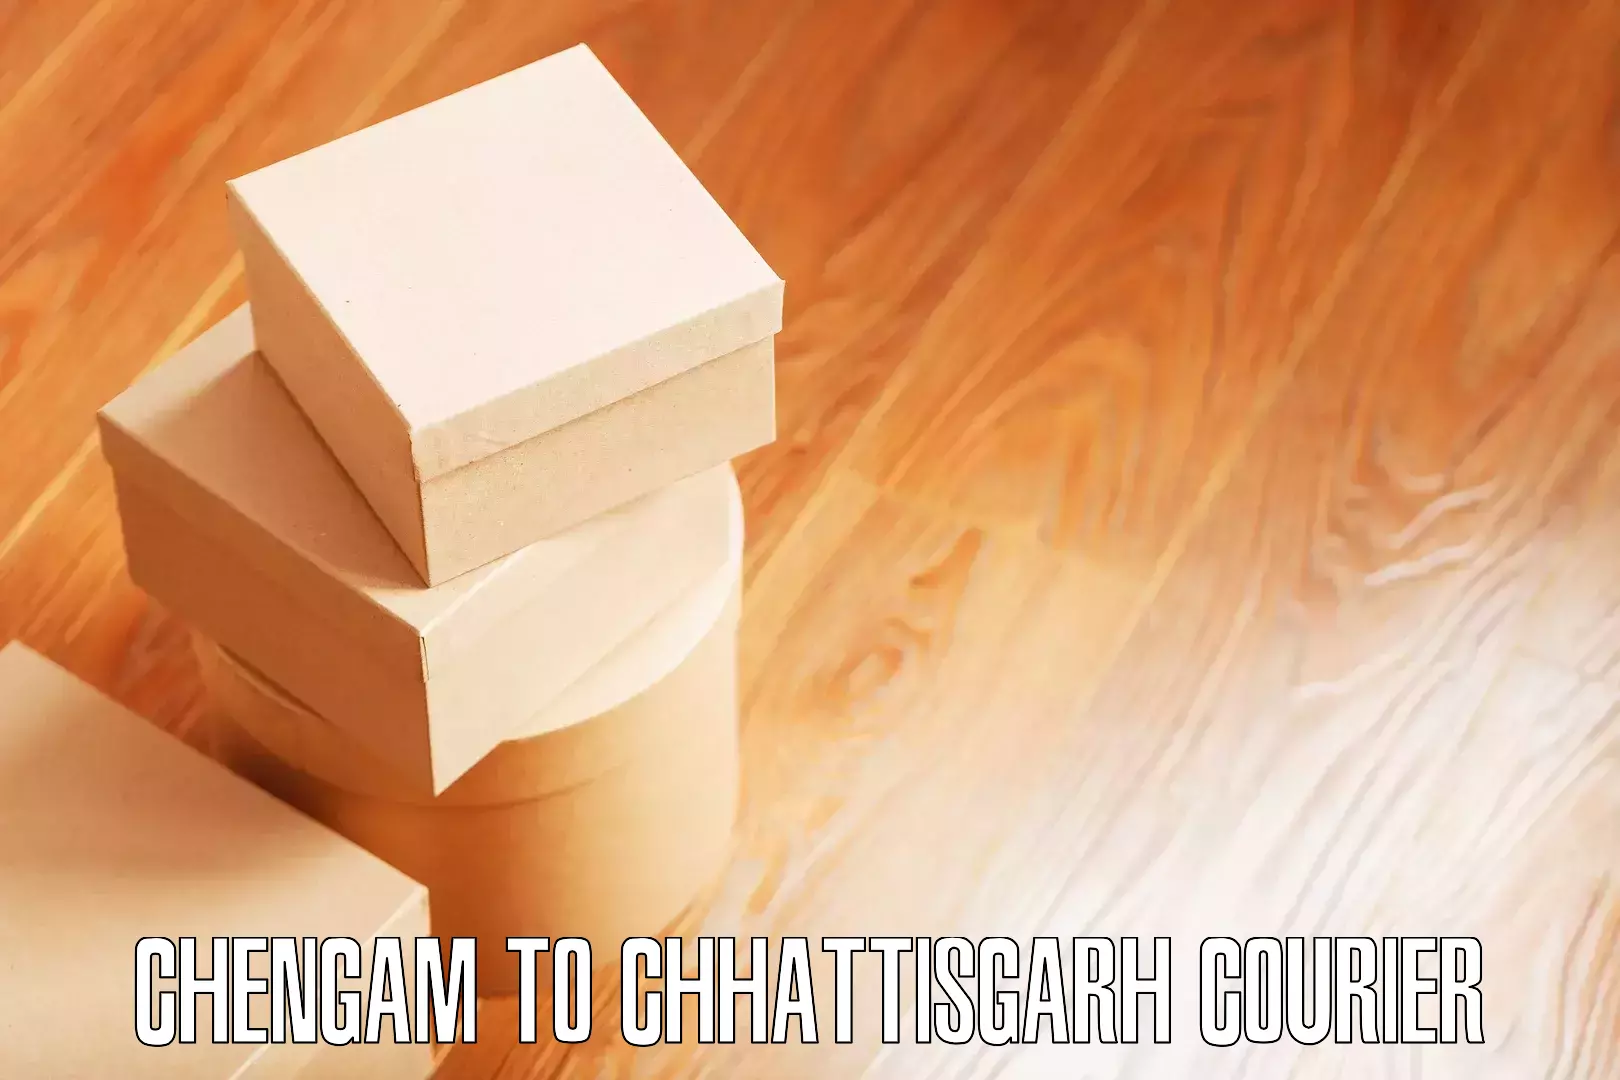 Hassle-free relocation Chengam to Chhattisgarh